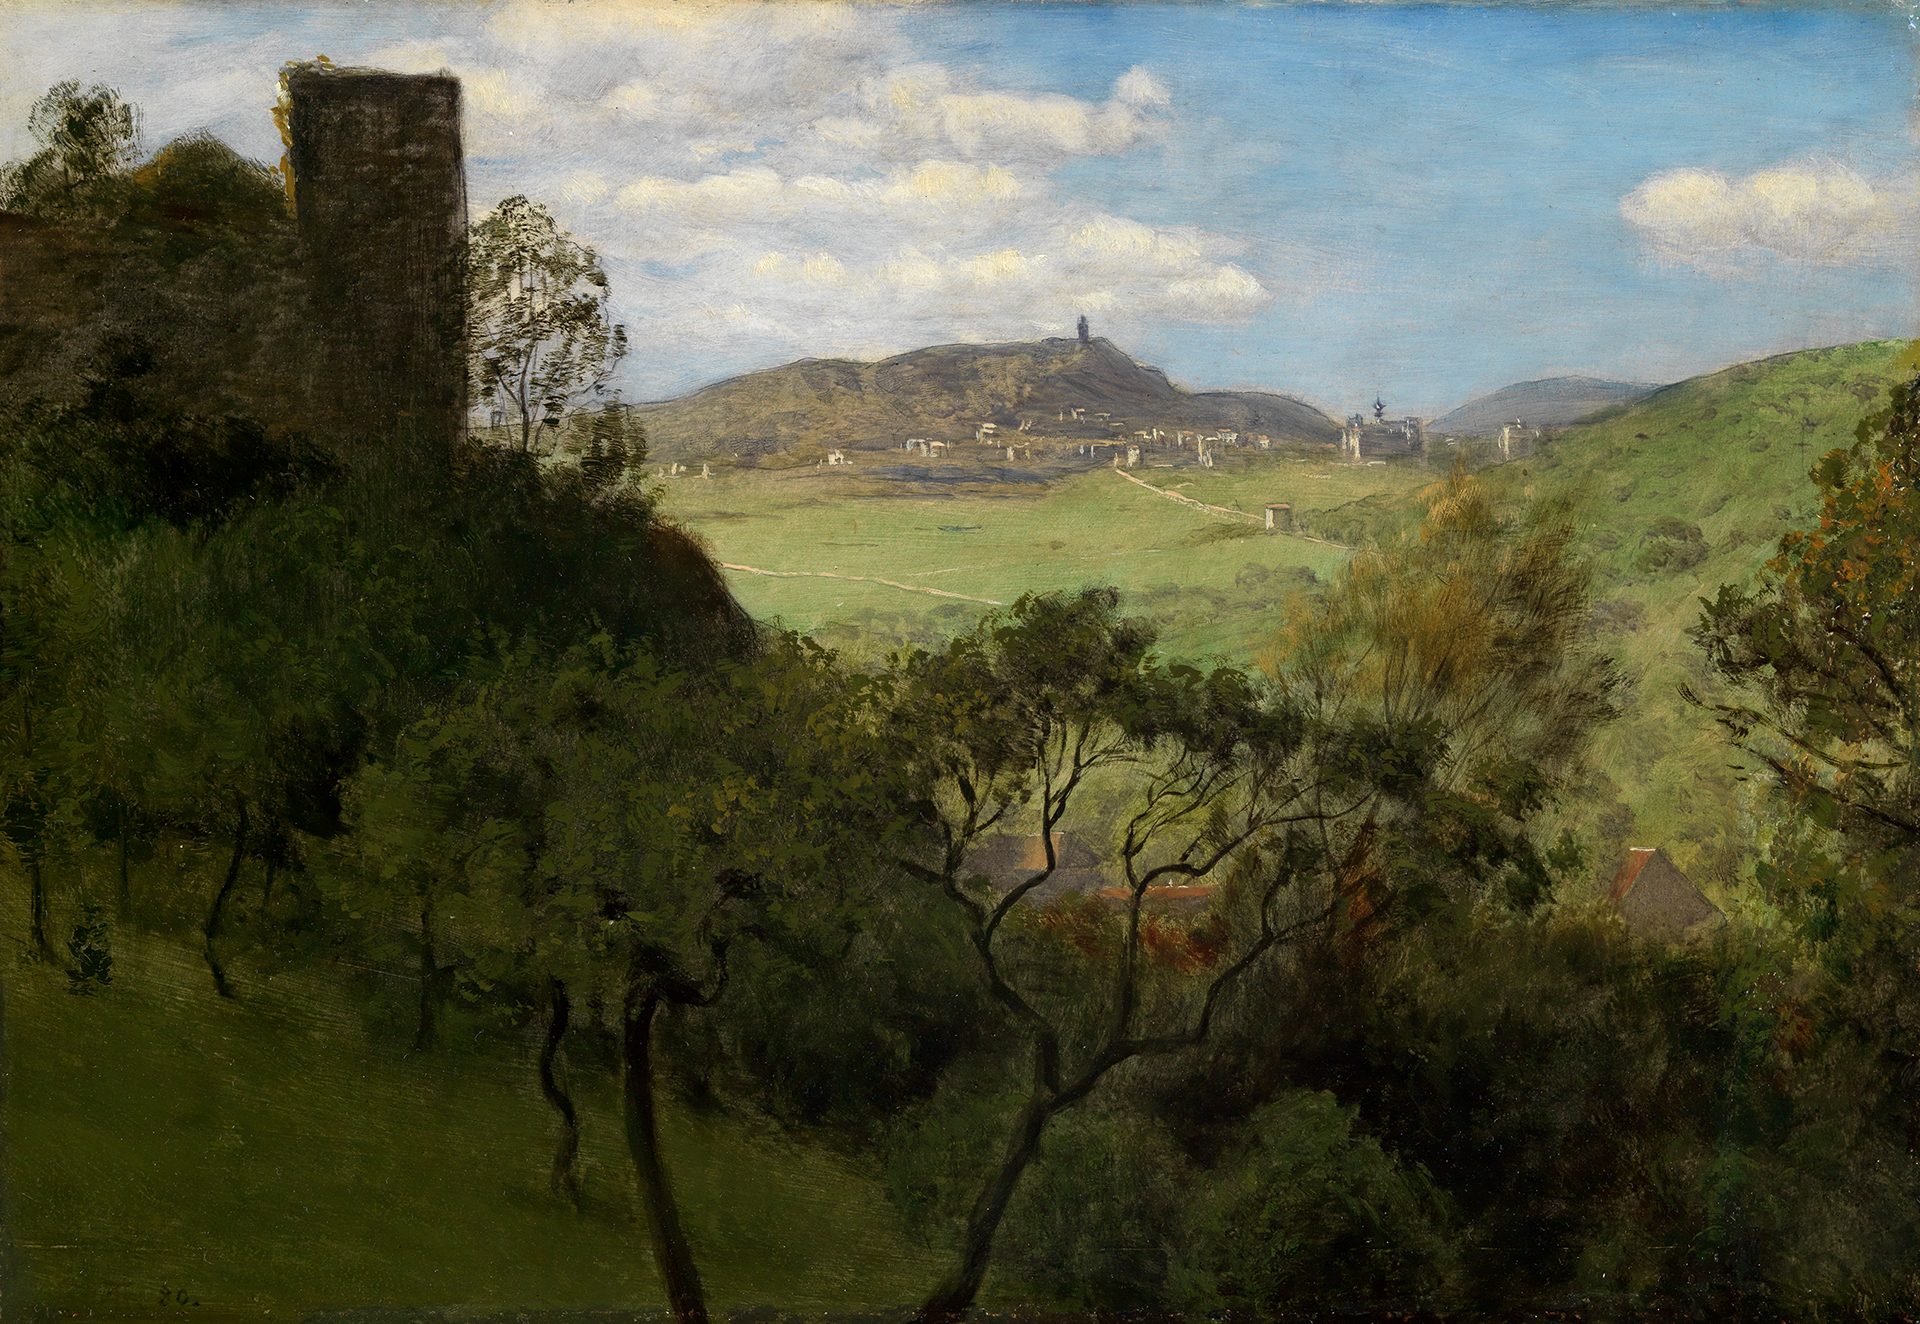 Landschaftsgemälde von Hans Thoma, das den Blick auf ein Tal und eine Burg zeigt